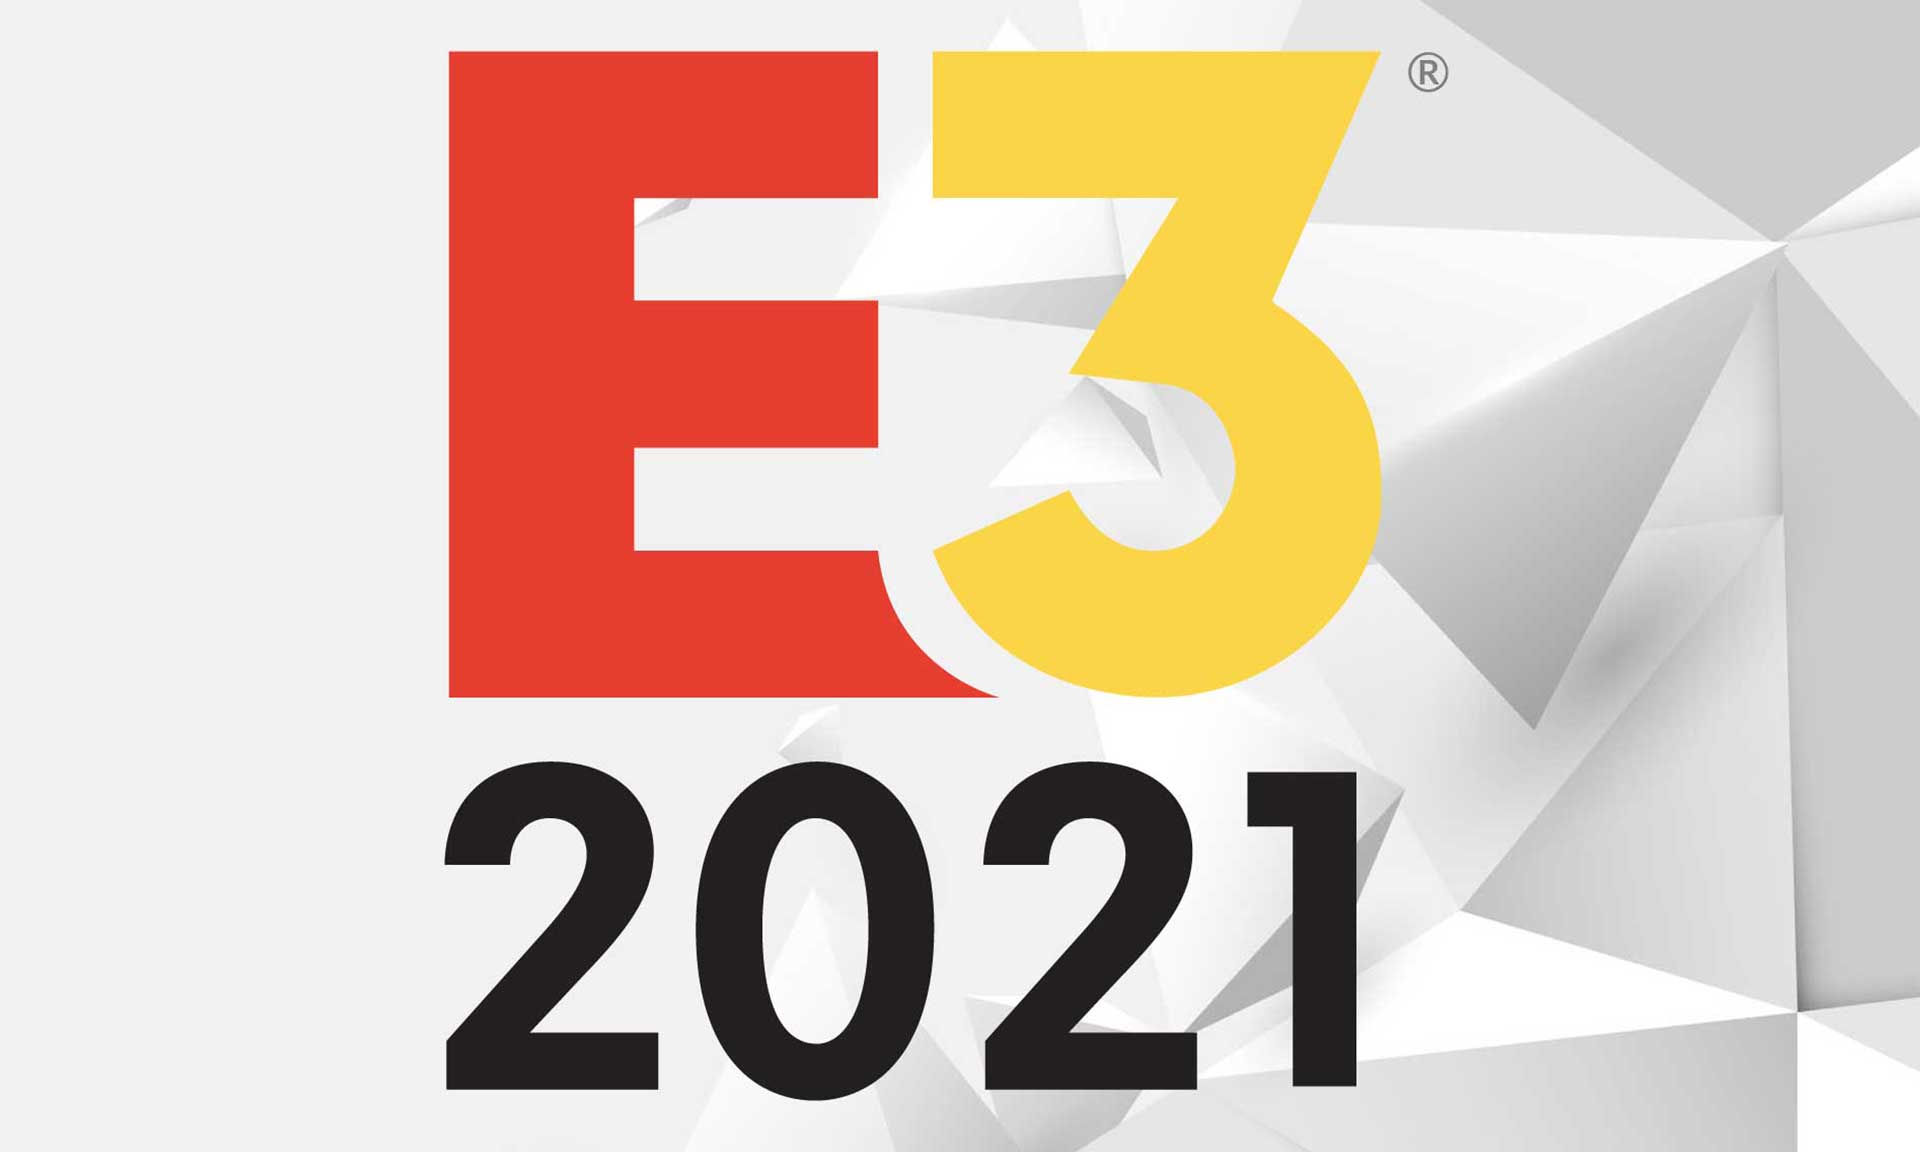 E3 2021 logo on background